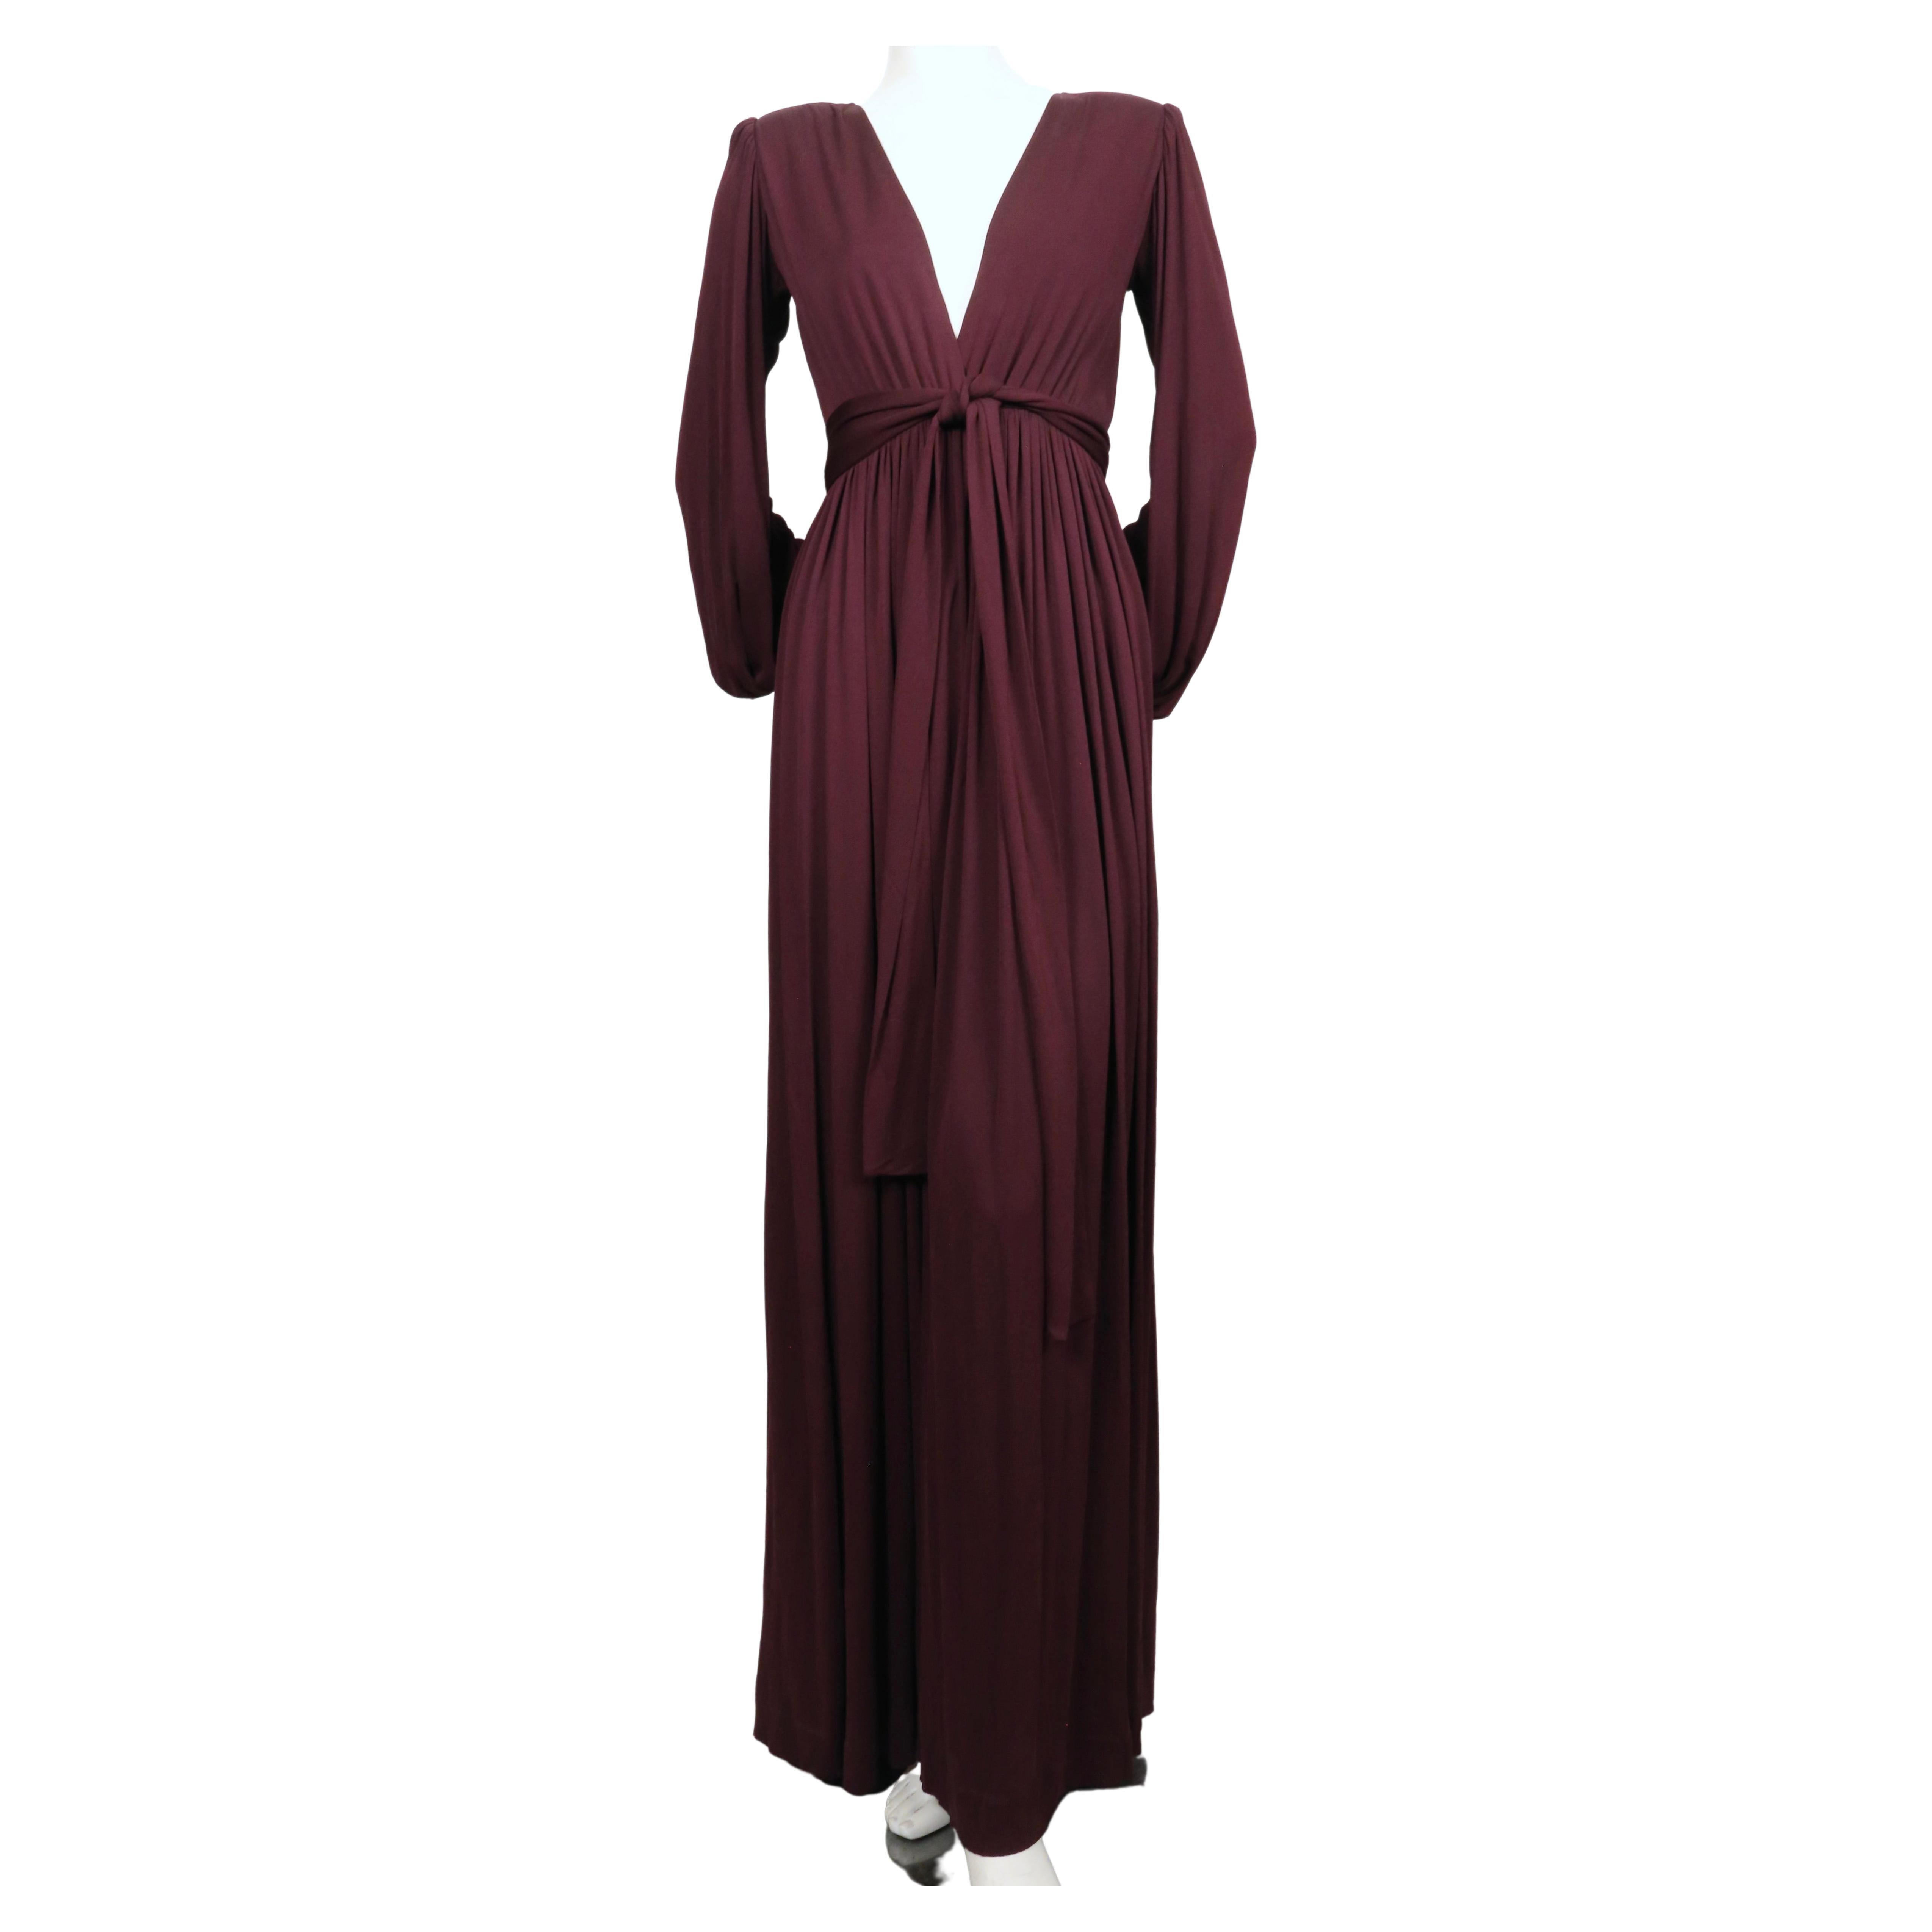 Exceptionnelle robe en jersey de couleur prune avec un profond décolleté en V, des manches amples et une ceinture enveloppante de Yves Saint Laurent datant de la fin des années 1970. Labellisé taille française 36